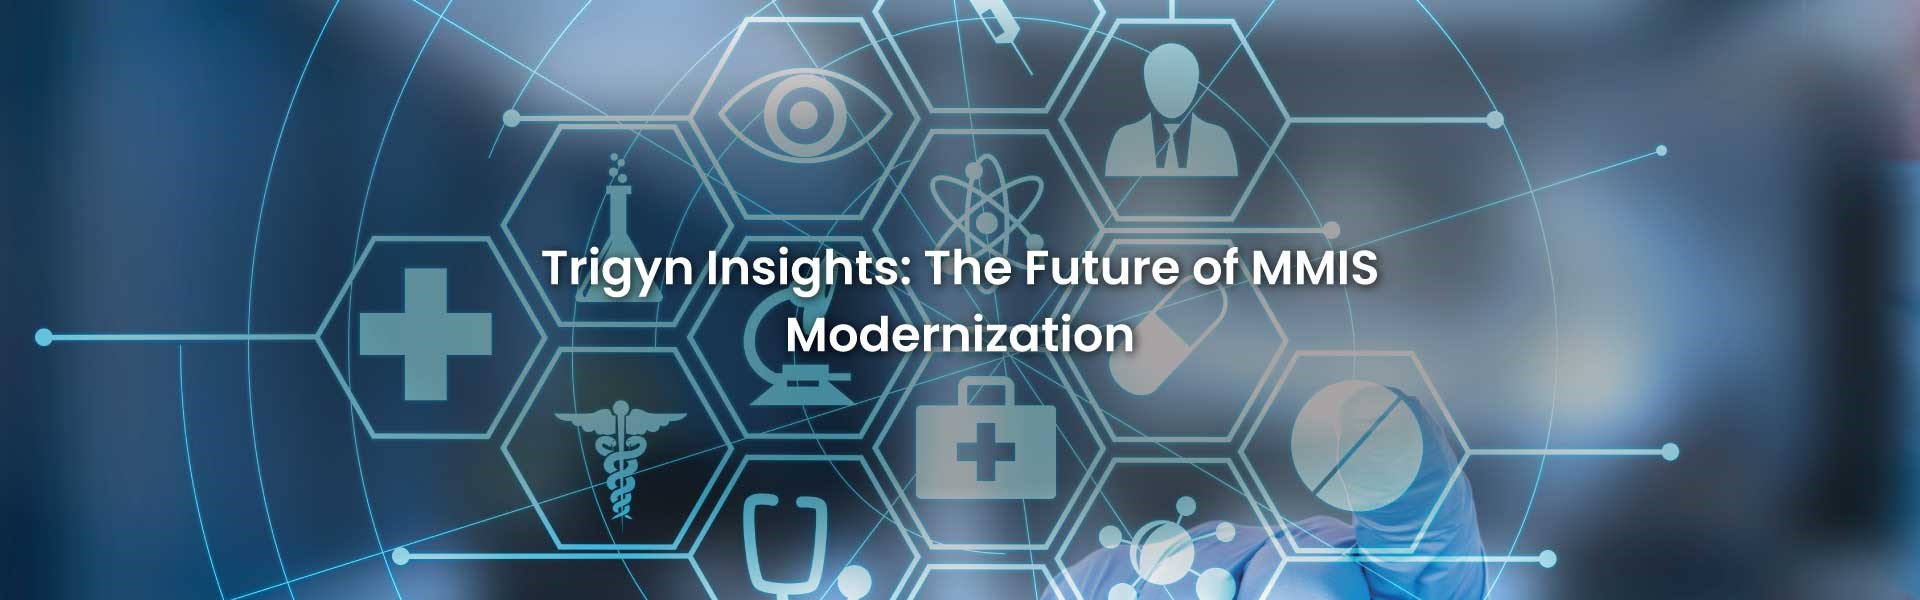  Future of MMIS Modernization